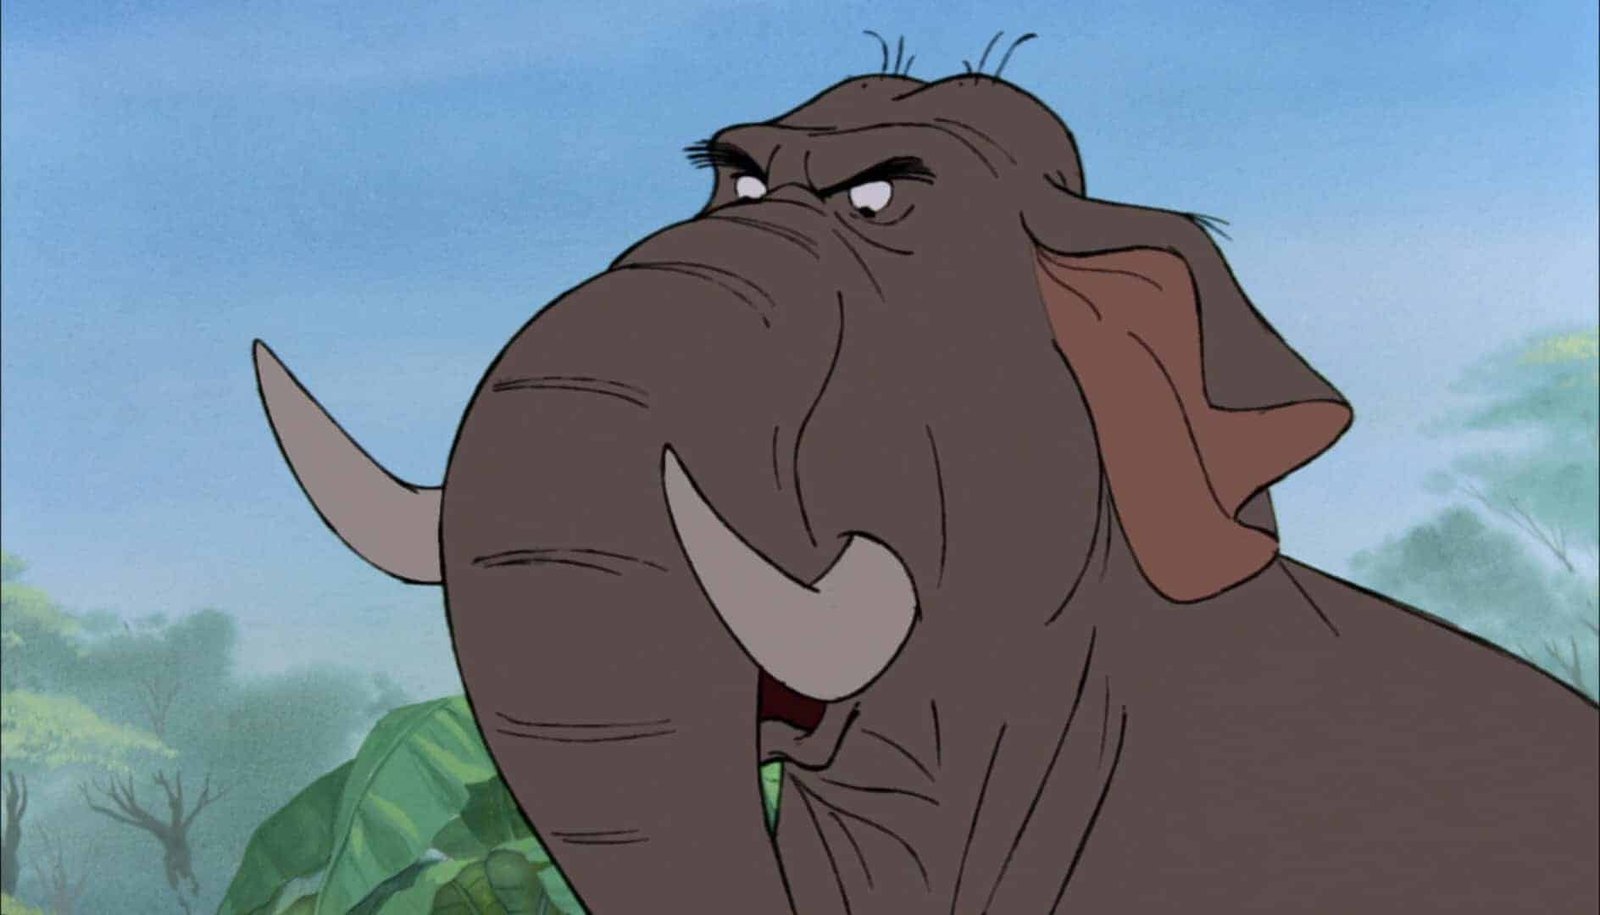 Image animée d'un grand éléphant gris grincheux avec des défenses blanches, des sourcils épais et une expression mécontente, ressemblant à des personnages de Disney, sur fond de jungle brumeuse.